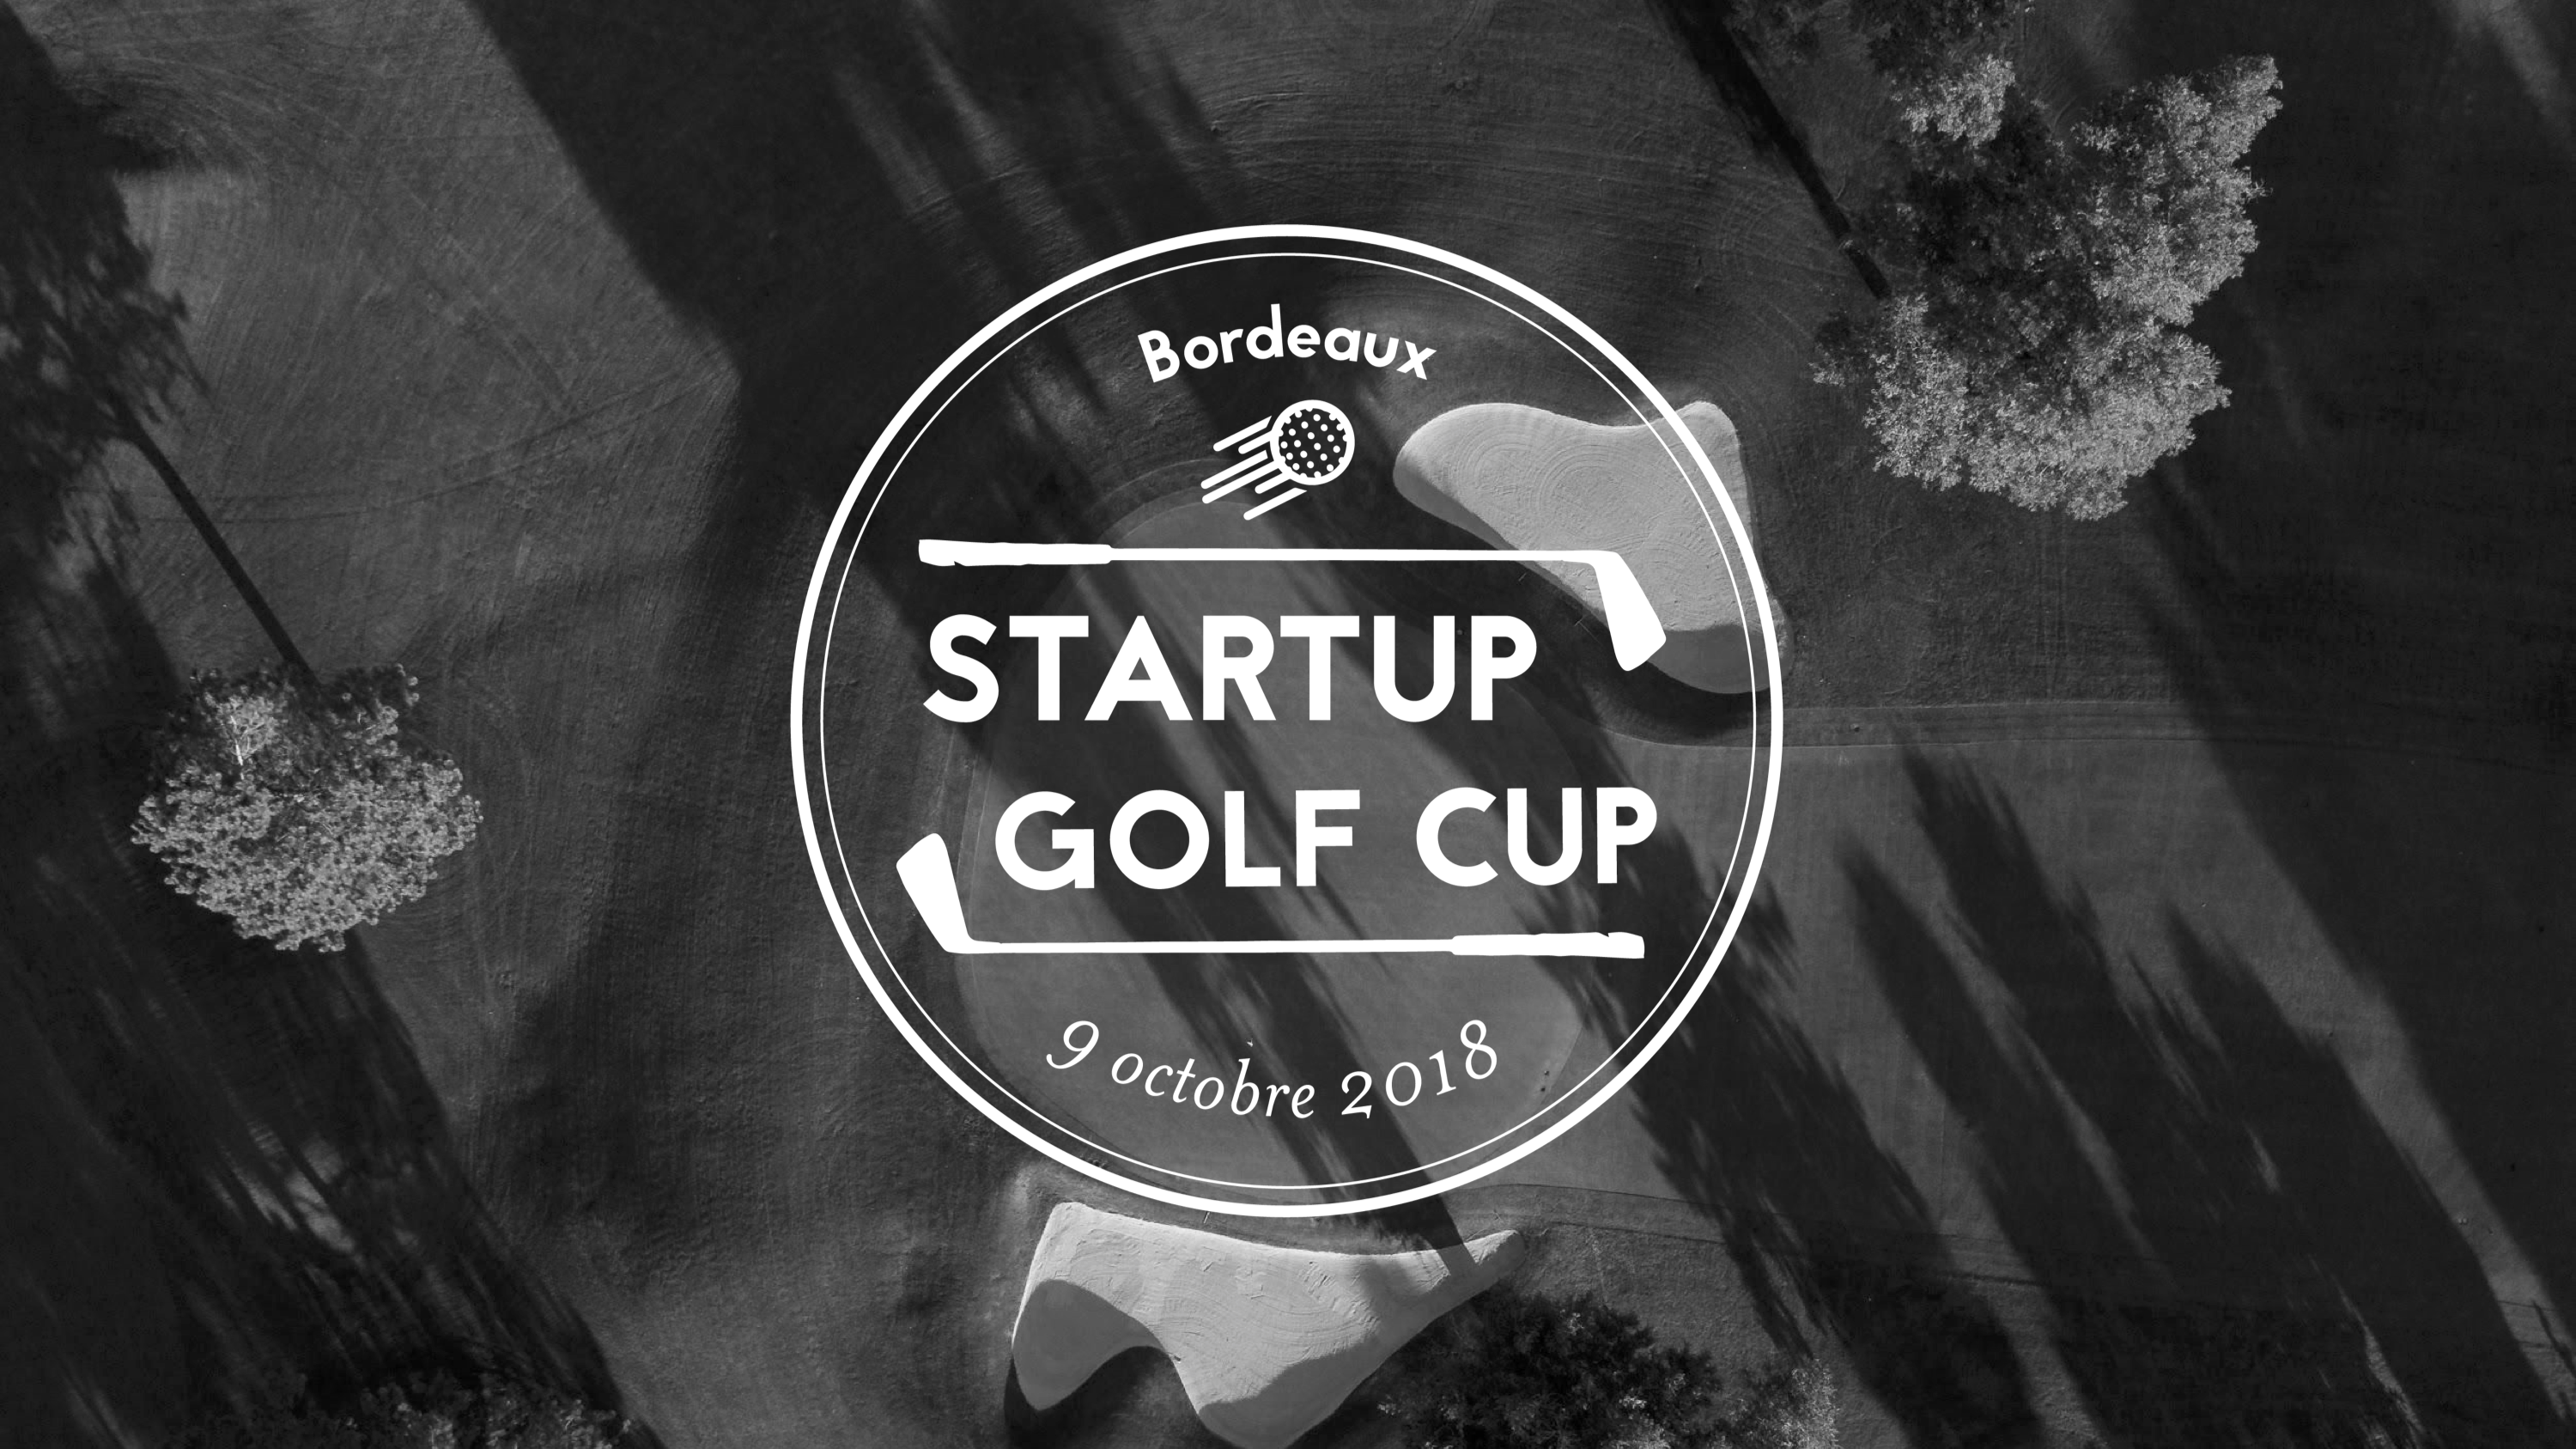 dp-startup-golf-cup-bordeaux_partie1